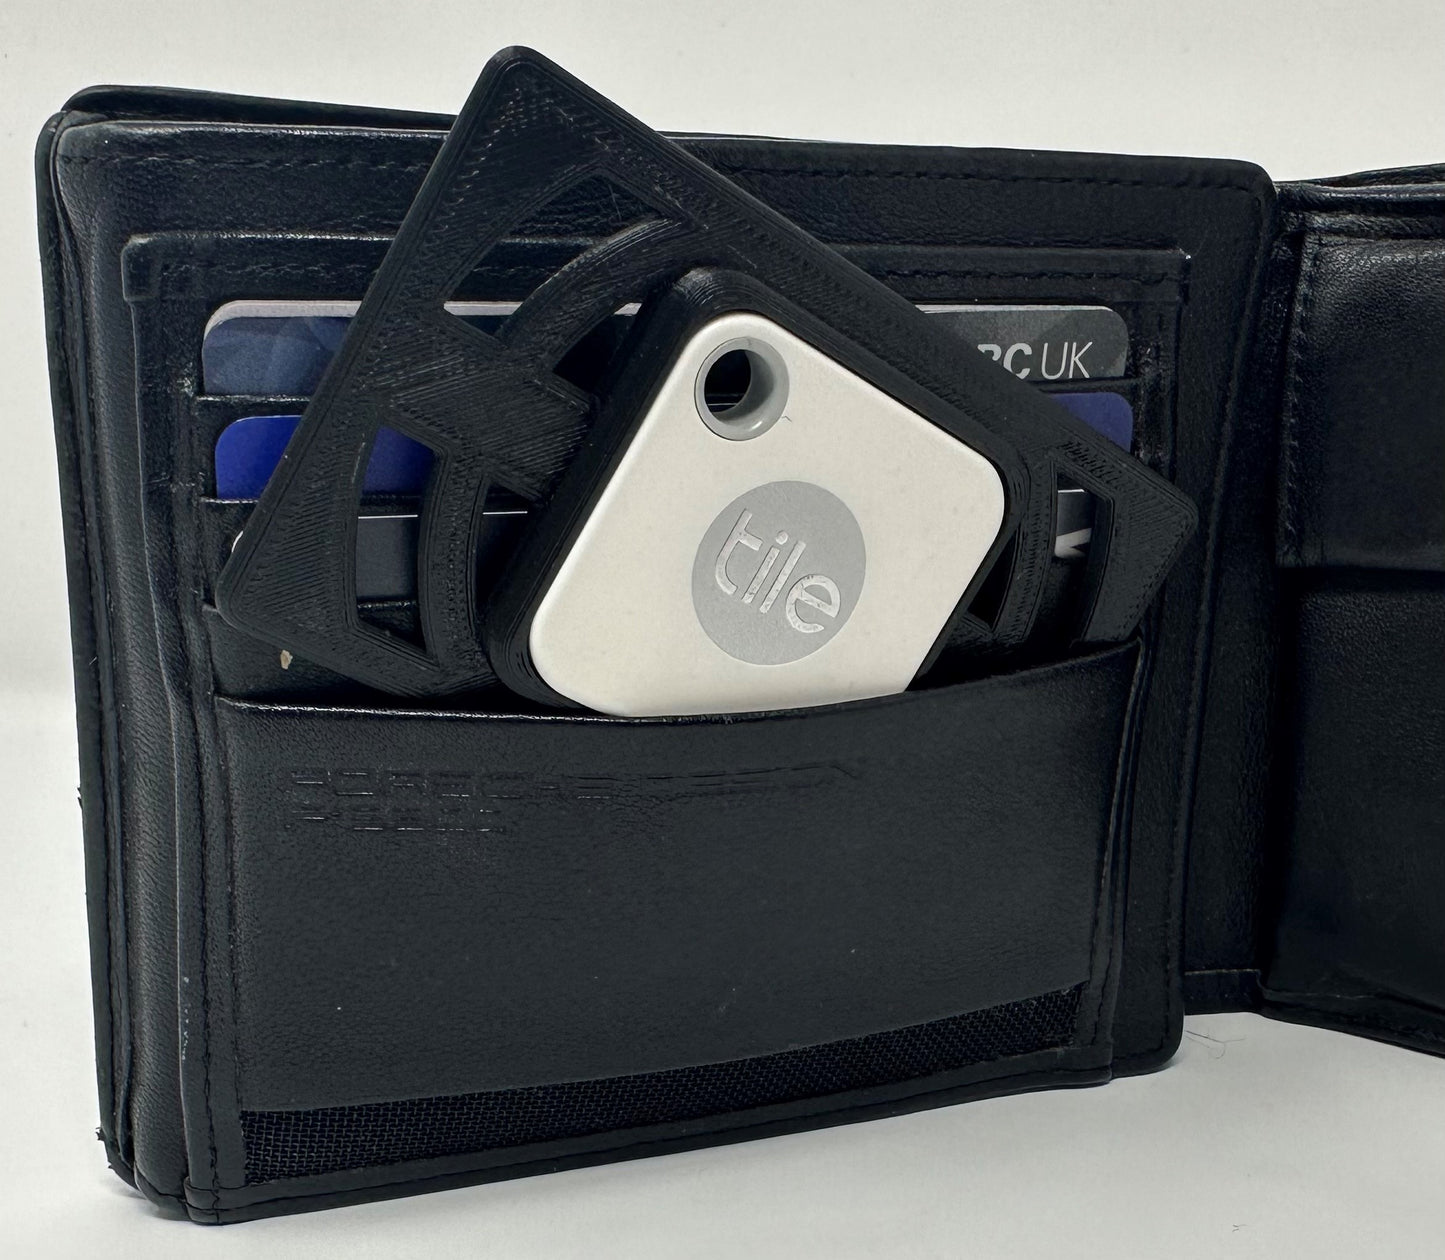 Tile Mate (2020 Version) Credit Card Sized Wallet/Purse/Clutch Bag Holder